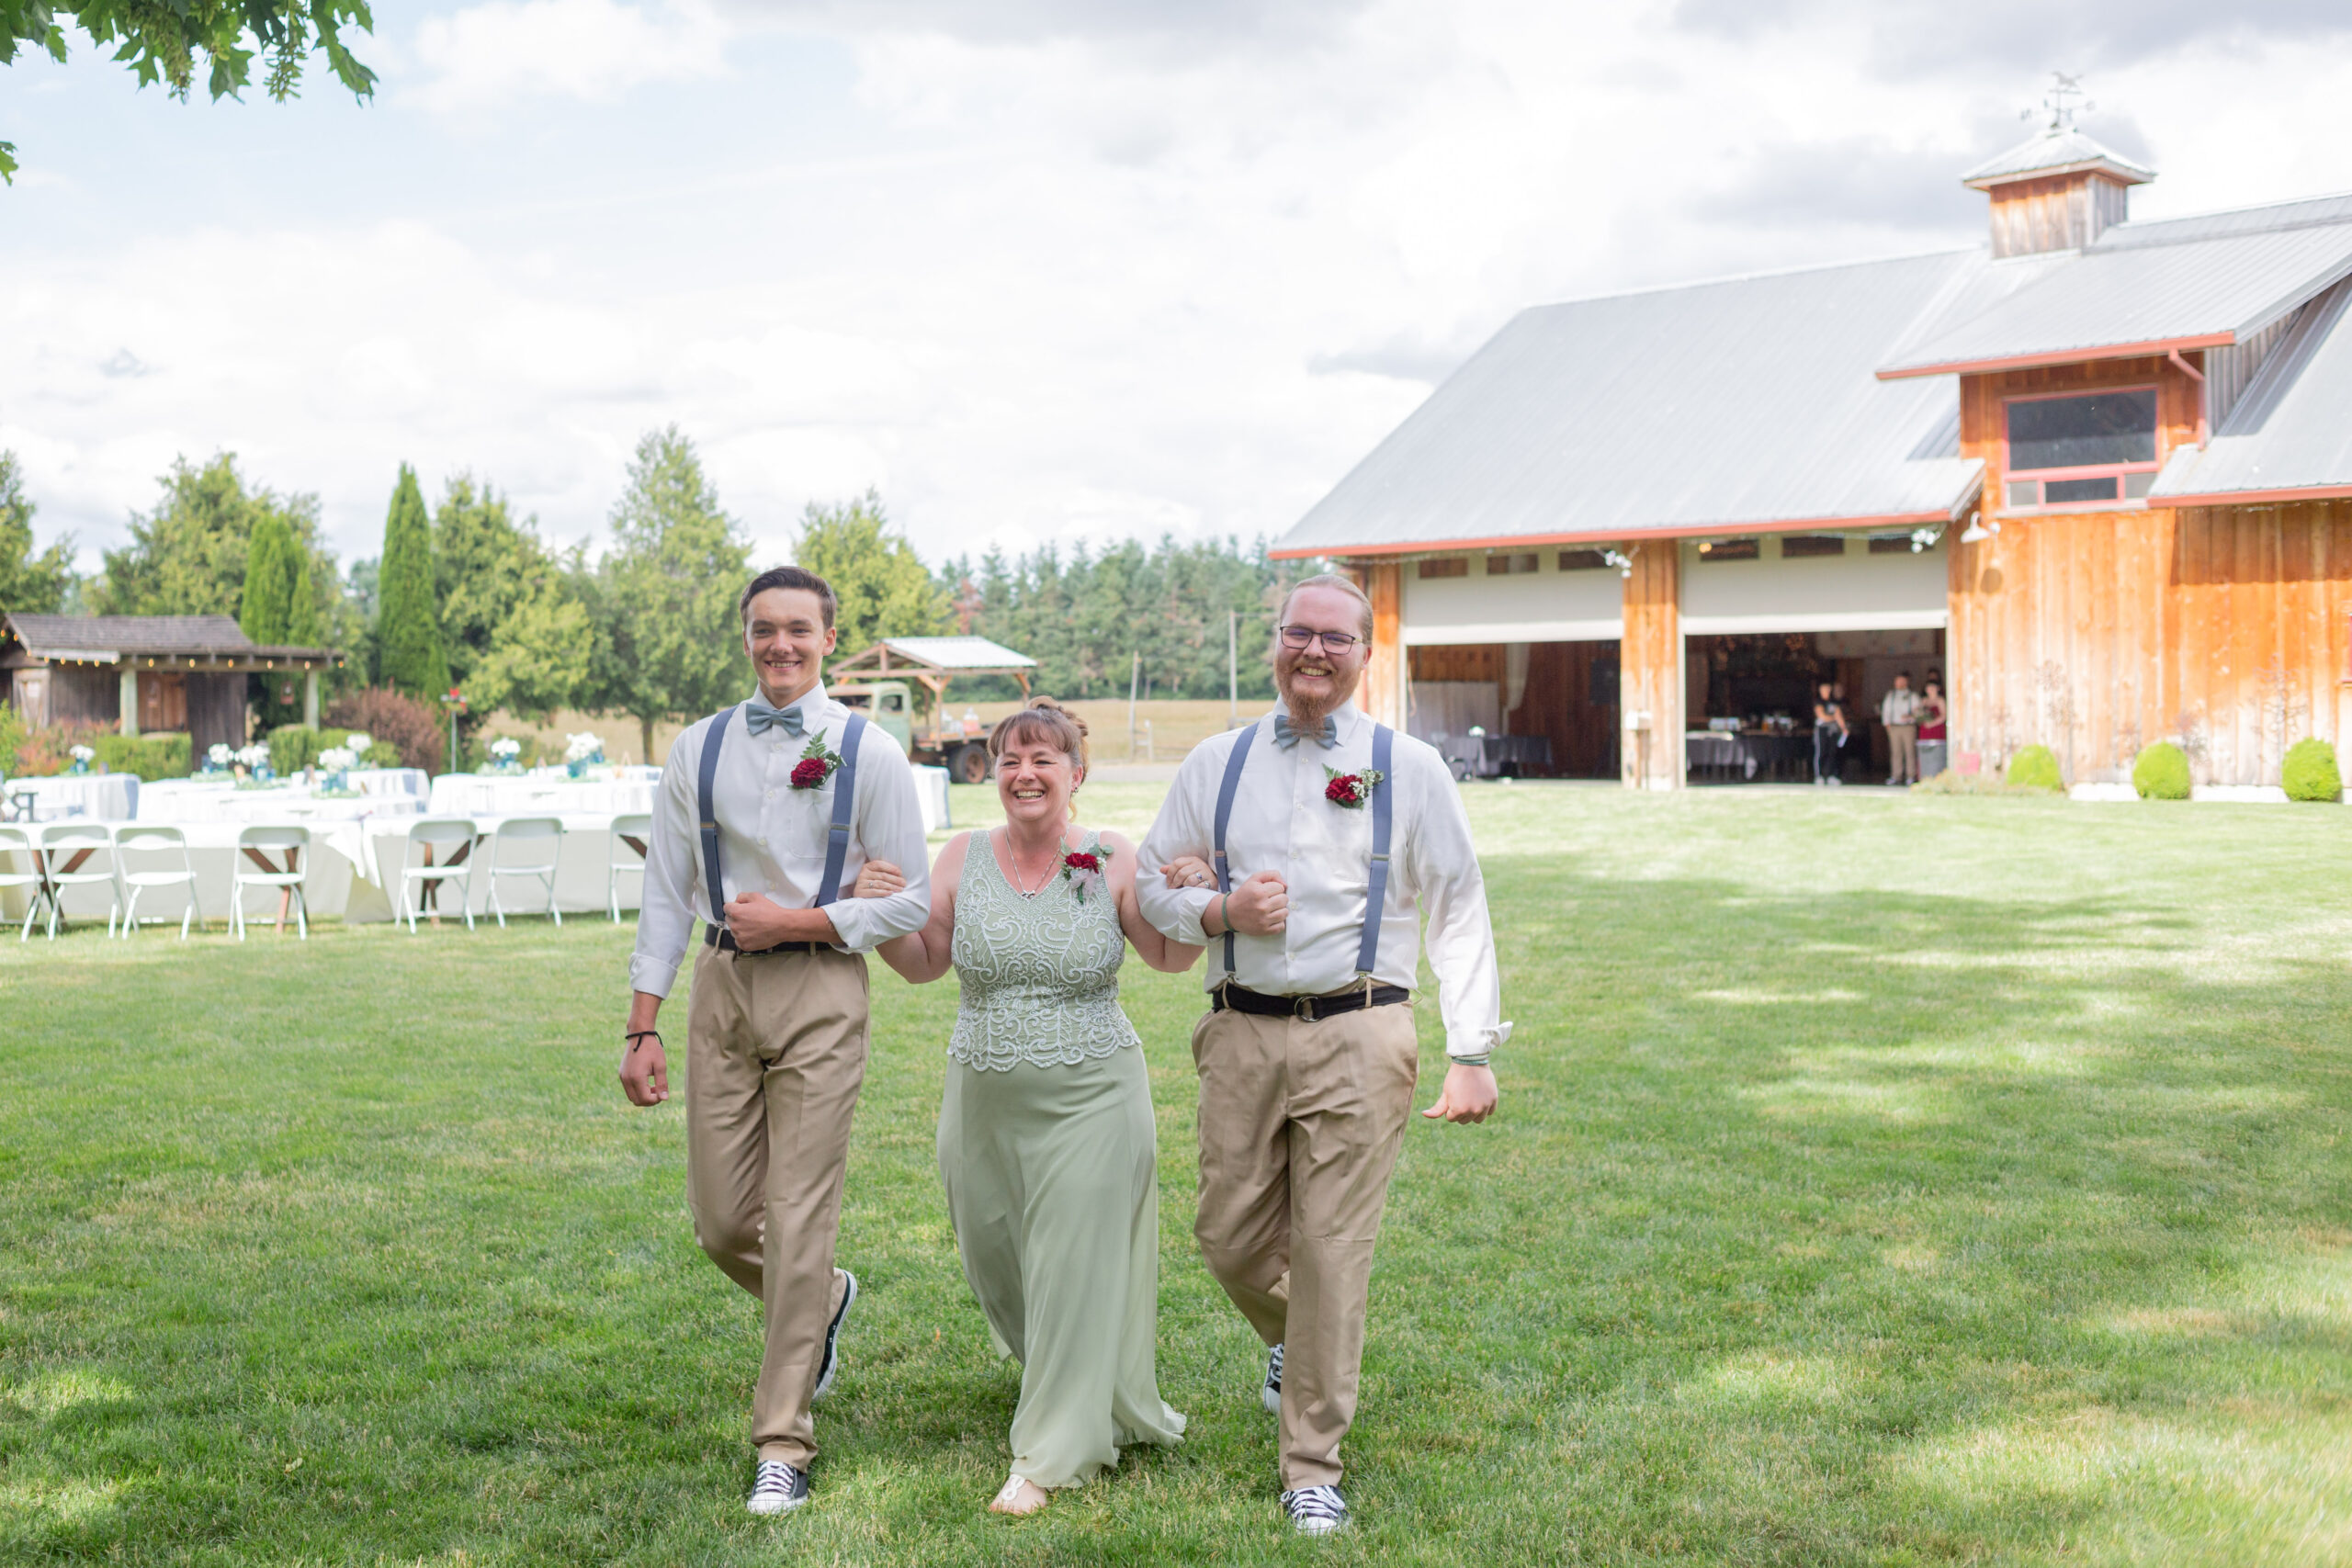 rustic-outdoor-oregon-wedding